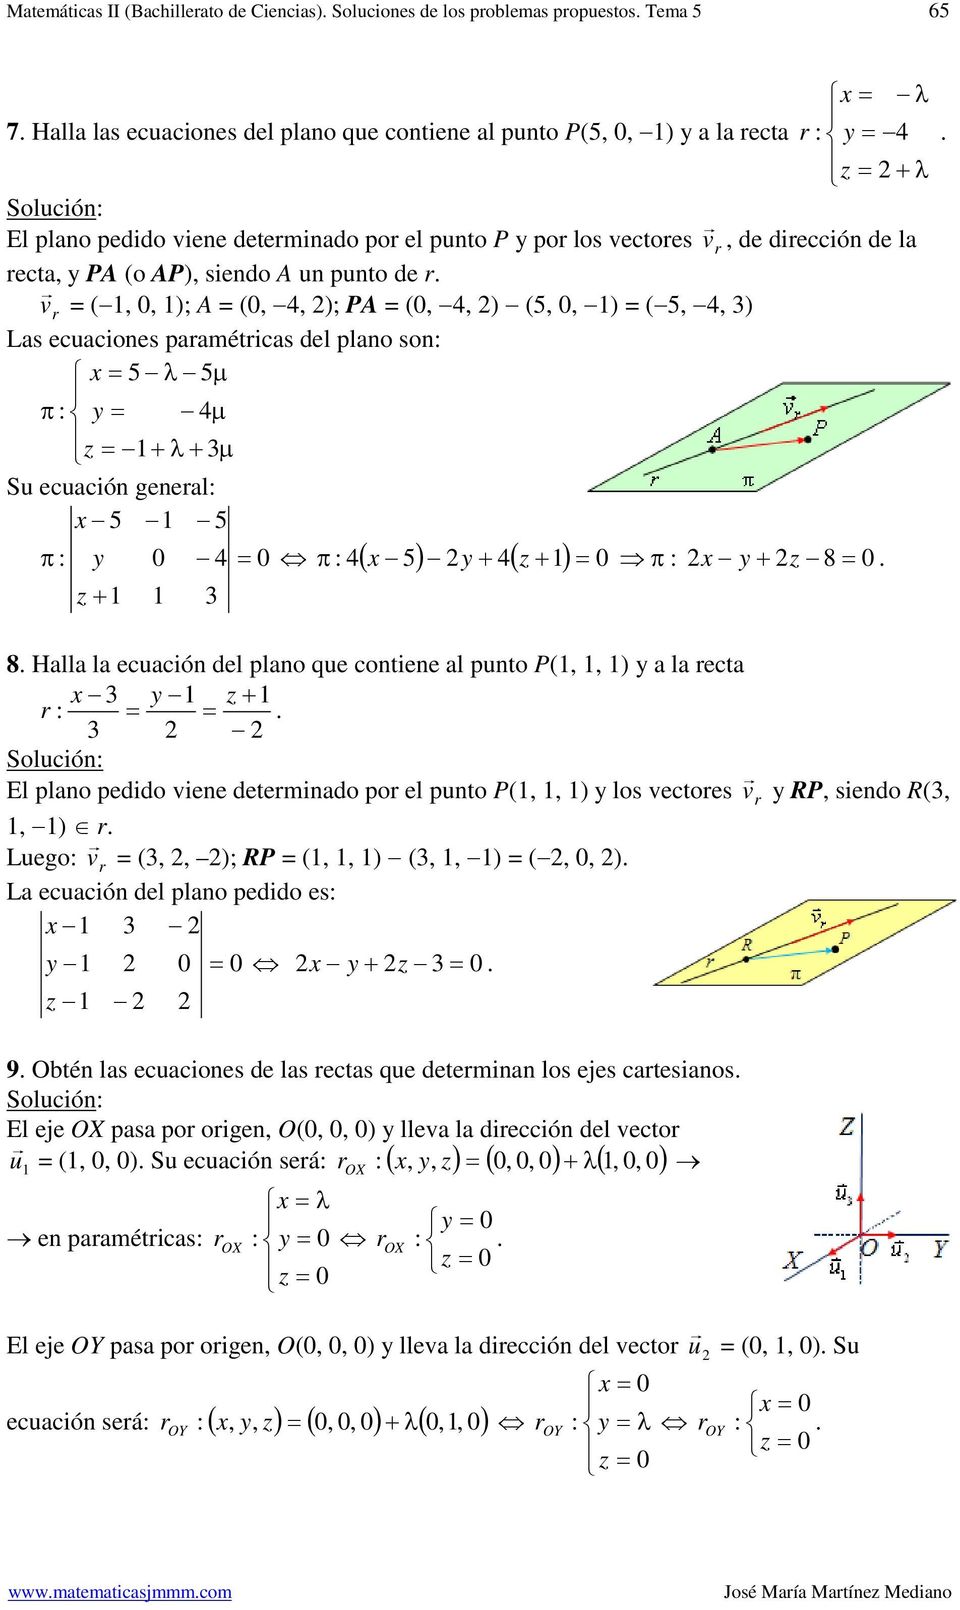 ecuación del plano que coniene al puno P(,, ) a la eca l plano pedido viene deeminado po el puno P(,, ) los vecoes v RP, siendo R(,, ) Luego v (,, ); RP (,, ) (,, ) (,, ) La ecuación del plano pedido